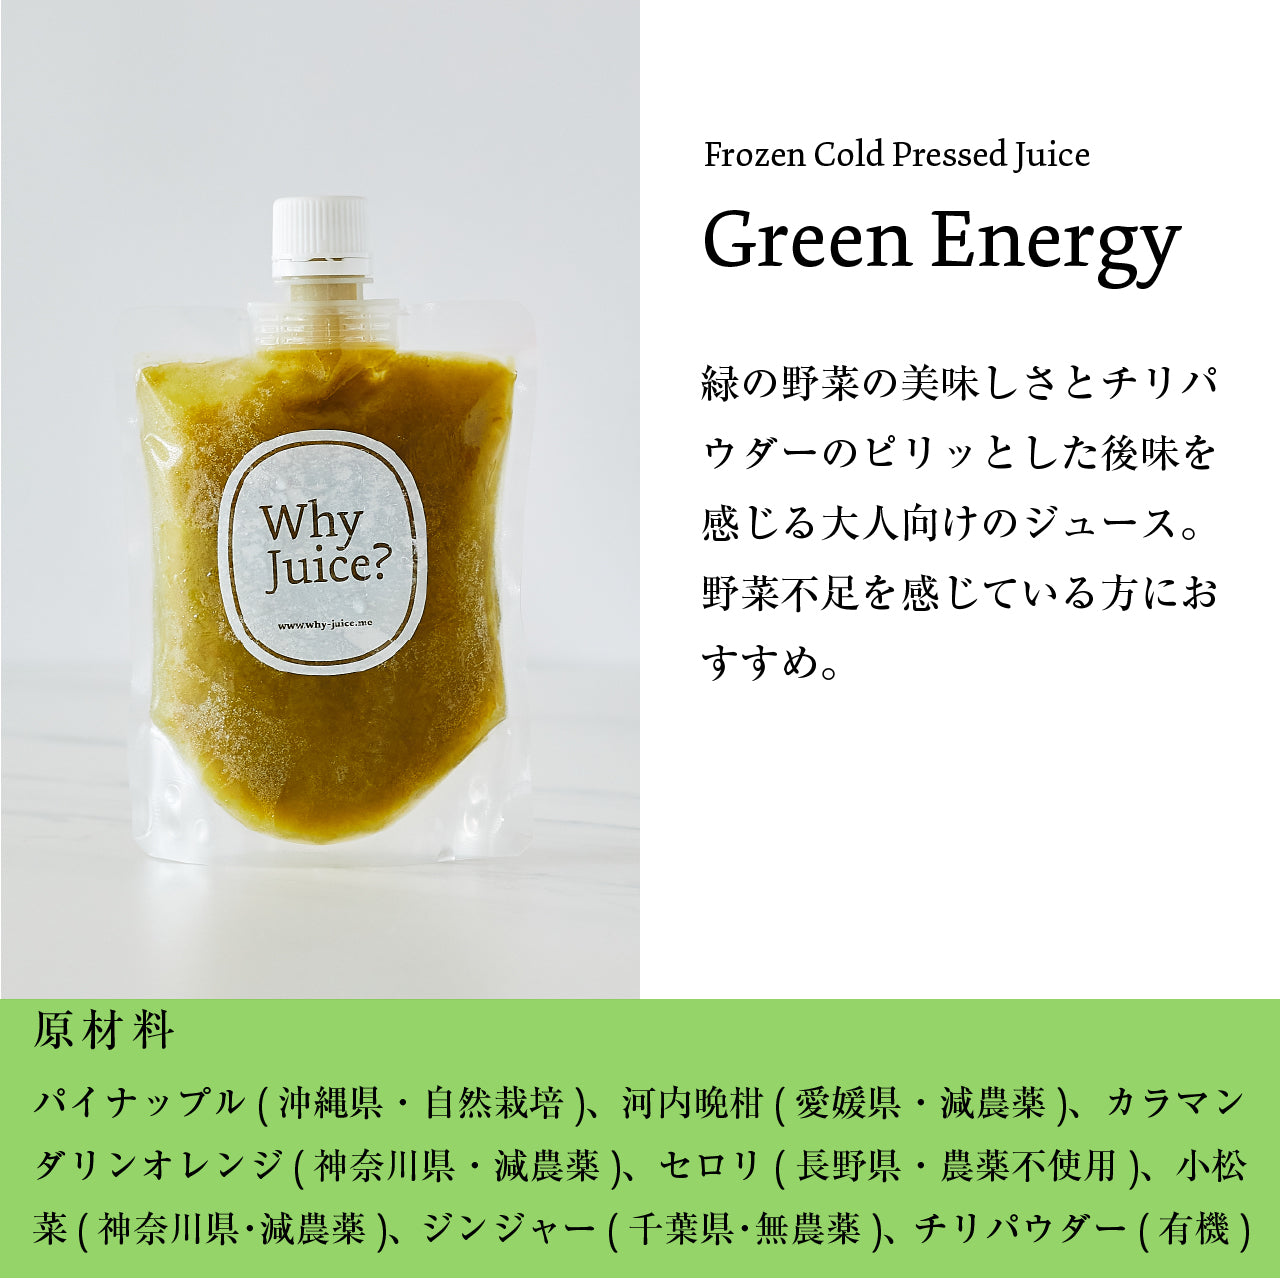 【ジュースクレンズ】Frozen Cold Pressed Juice【Green Energy】6本セット【コールドプレスジュース】